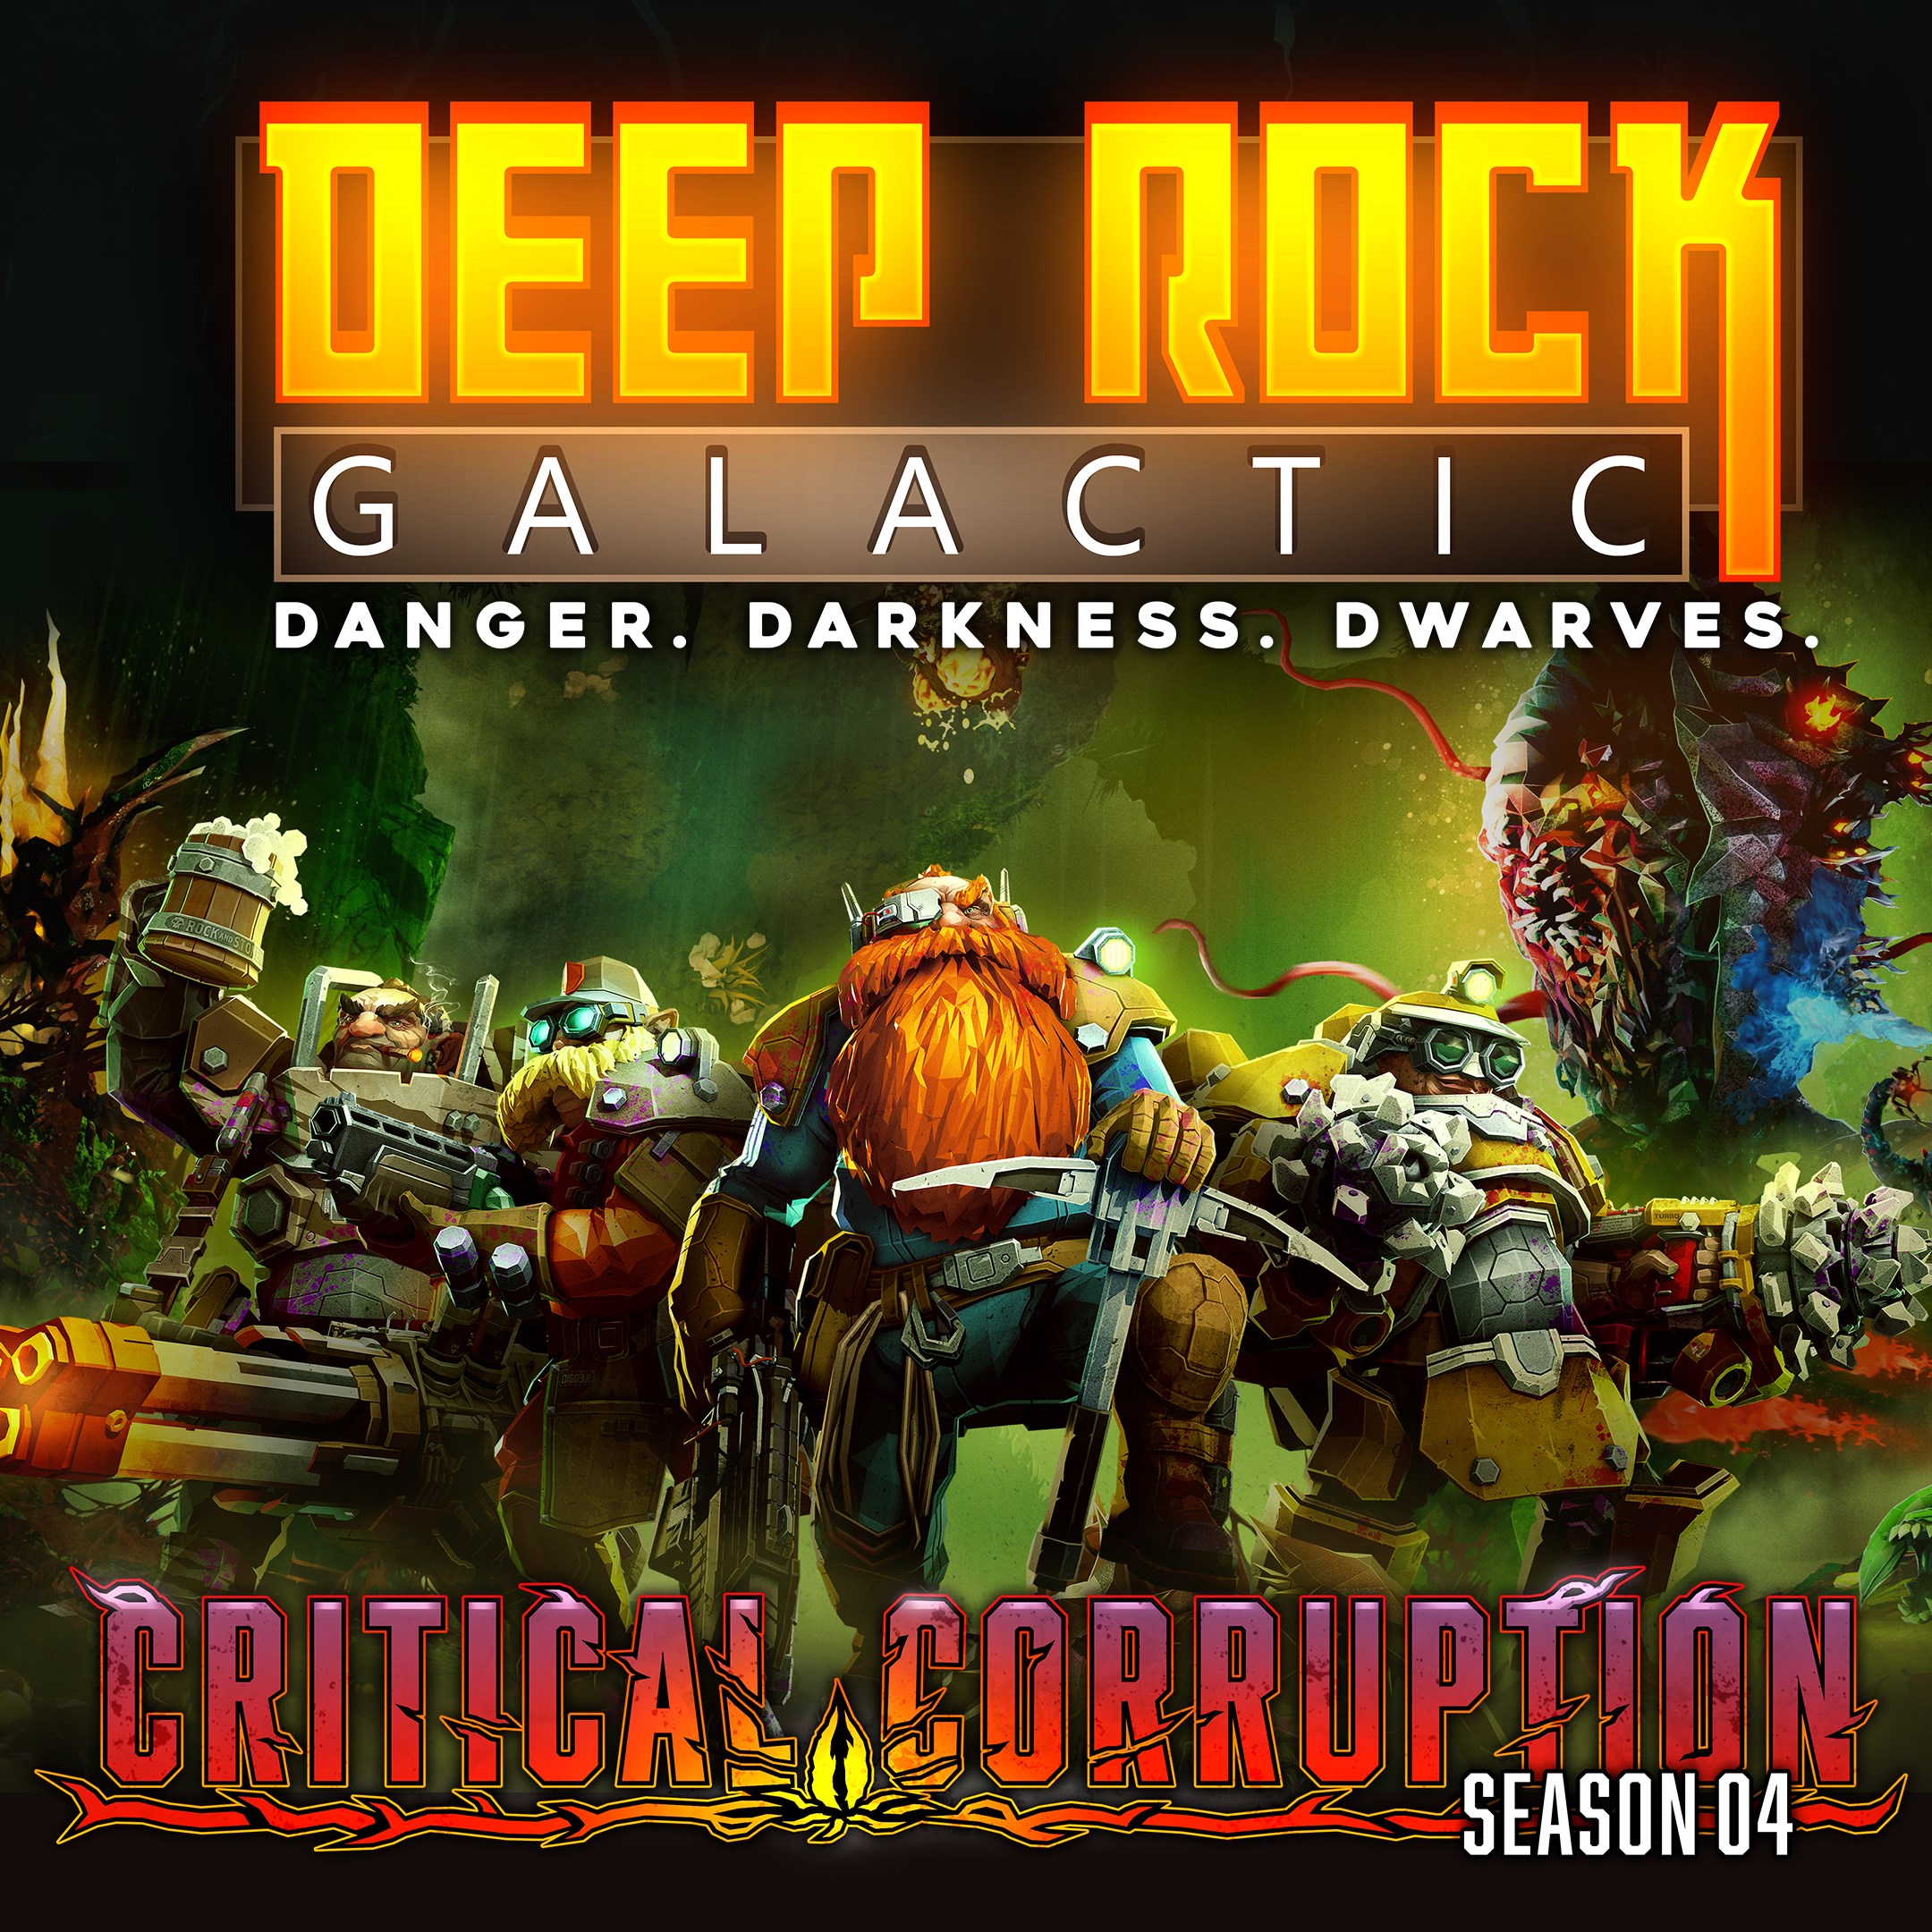 Читы на deep rock galactic. Deep Rock Galactic настольная игра. Deep Rock Galactic зал славы. Deep Rock Galactic Mini Mule. Фигурка по игре Deep Rock Galactic.